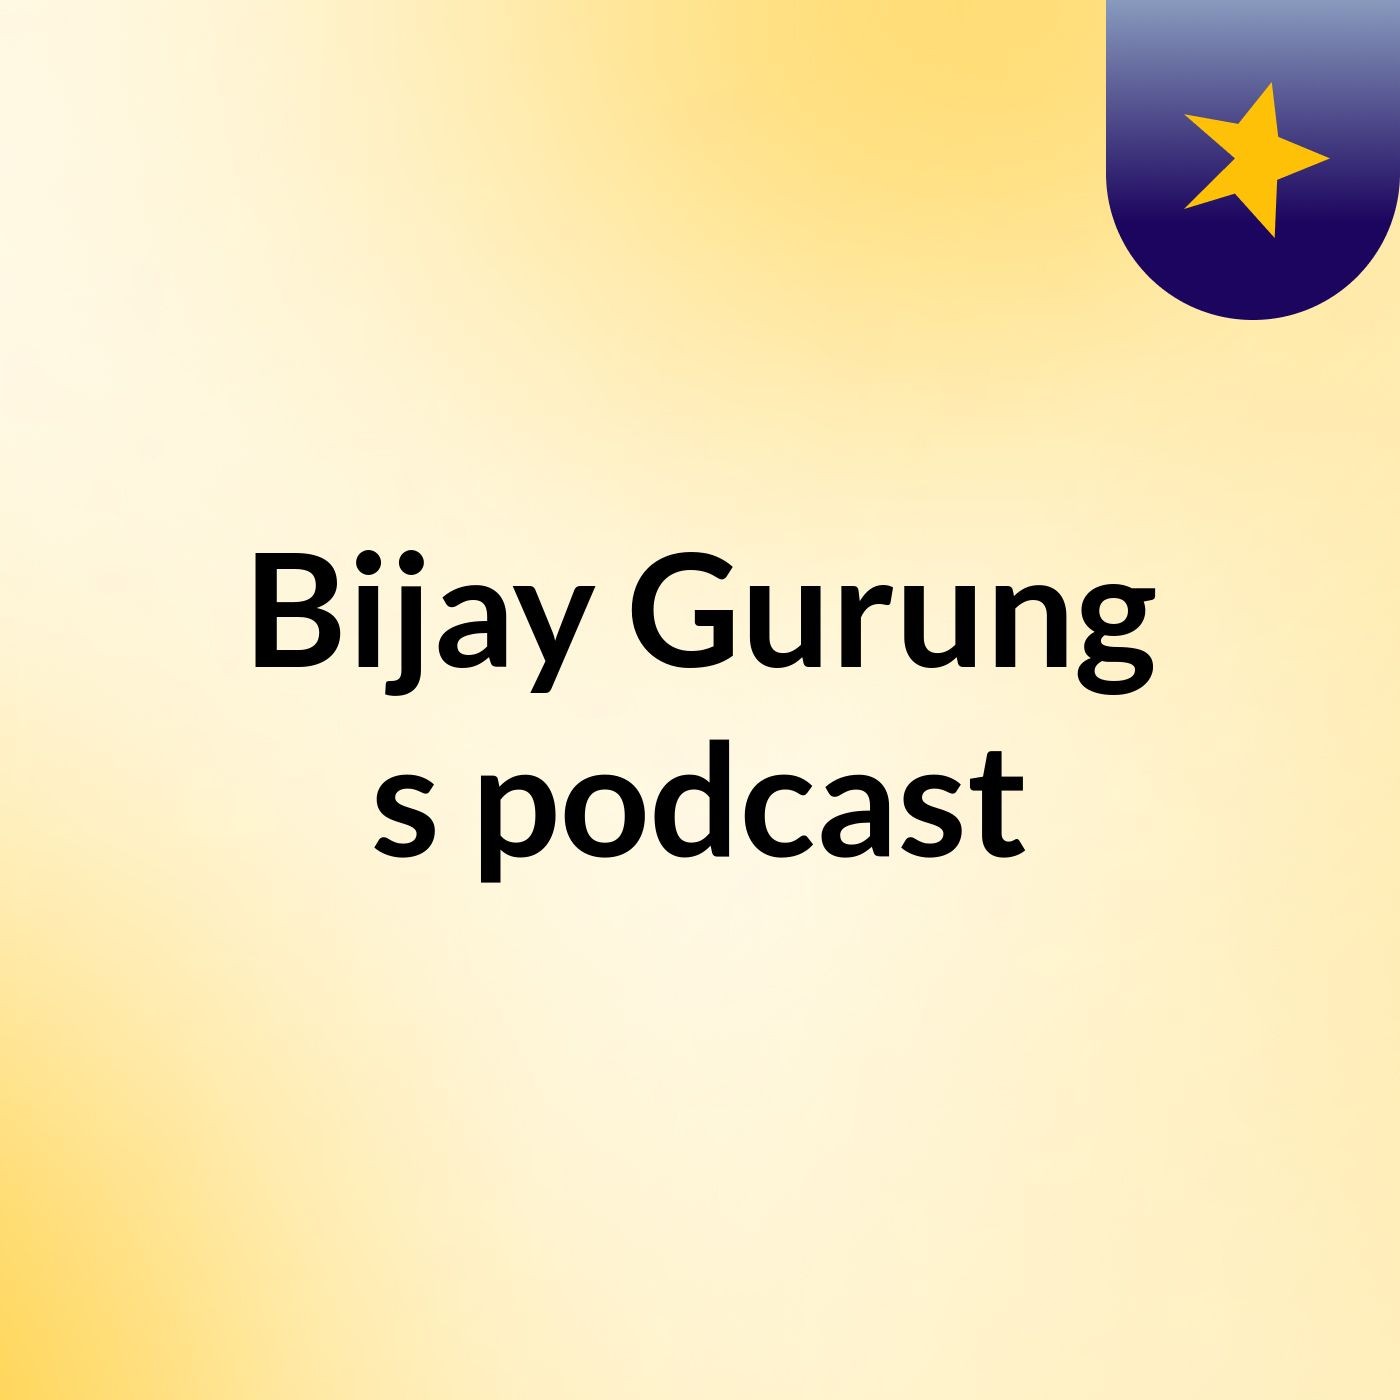 Episode 5 - Bijay Gurung's podcast